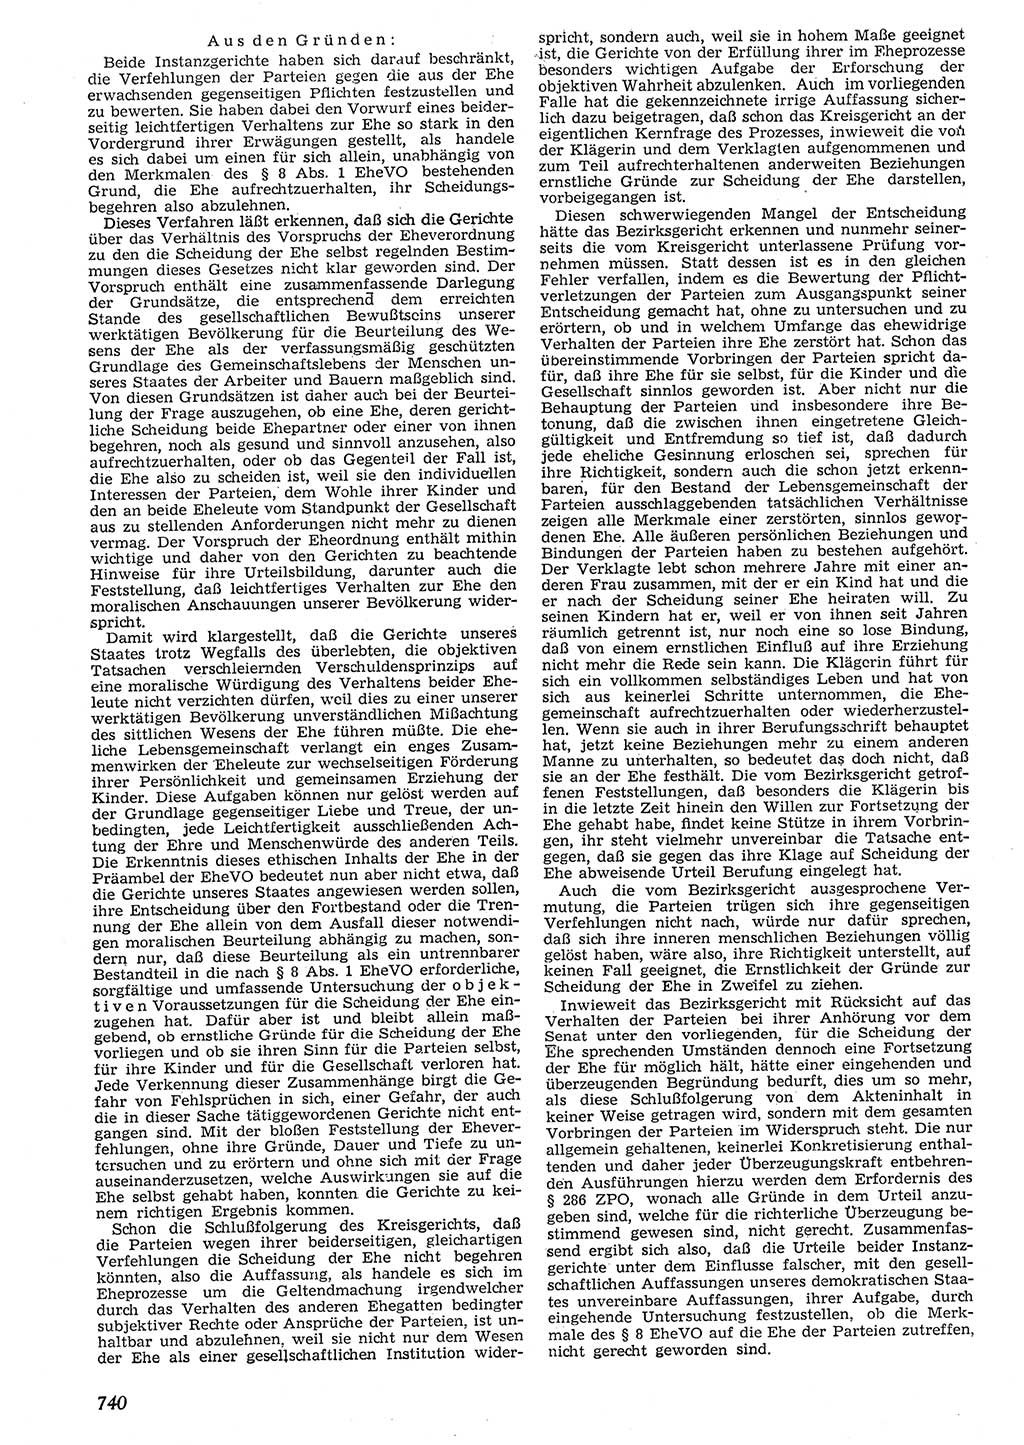 Neue Justiz (NJ), Zeitschrift für Recht und Rechtswissenschaft [Deutsche Demokratische Republik (DDR)], 10. Jahrgang 1956, Seite 740 (NJ DDR 1956, S. 740)